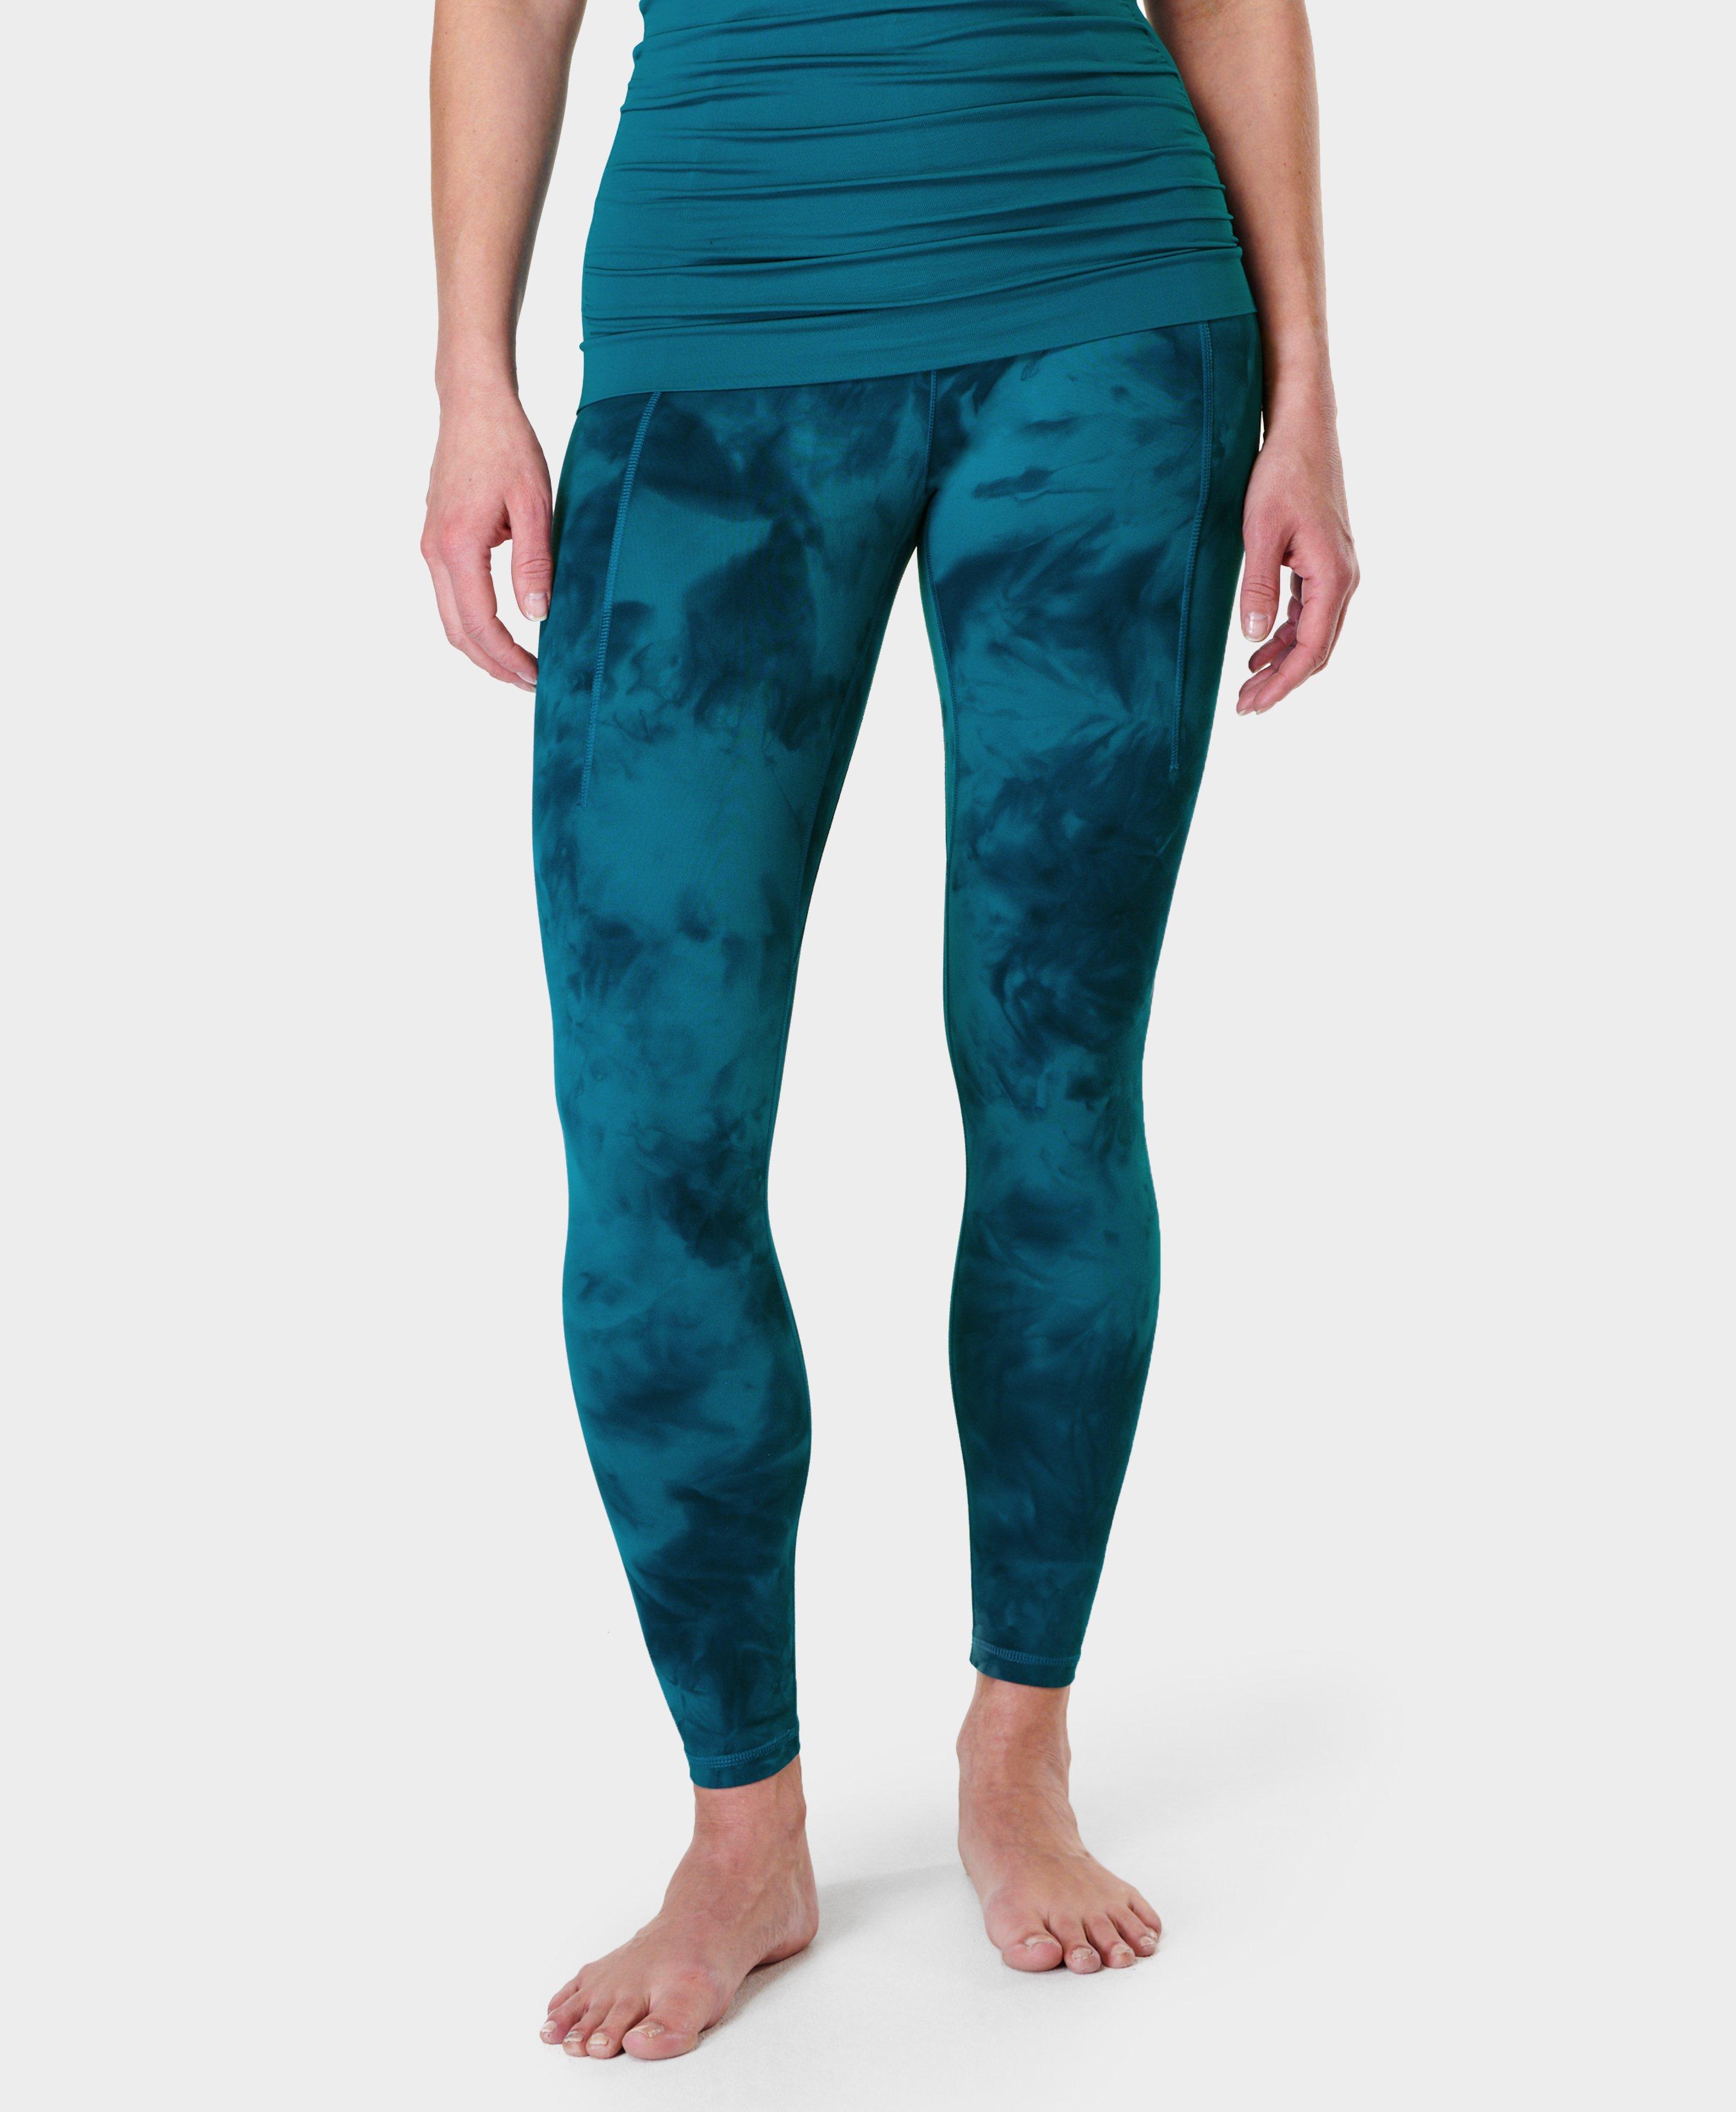 Super Soft Yoga Leggings - Blue Ripple Snake Print, Women's Leggings